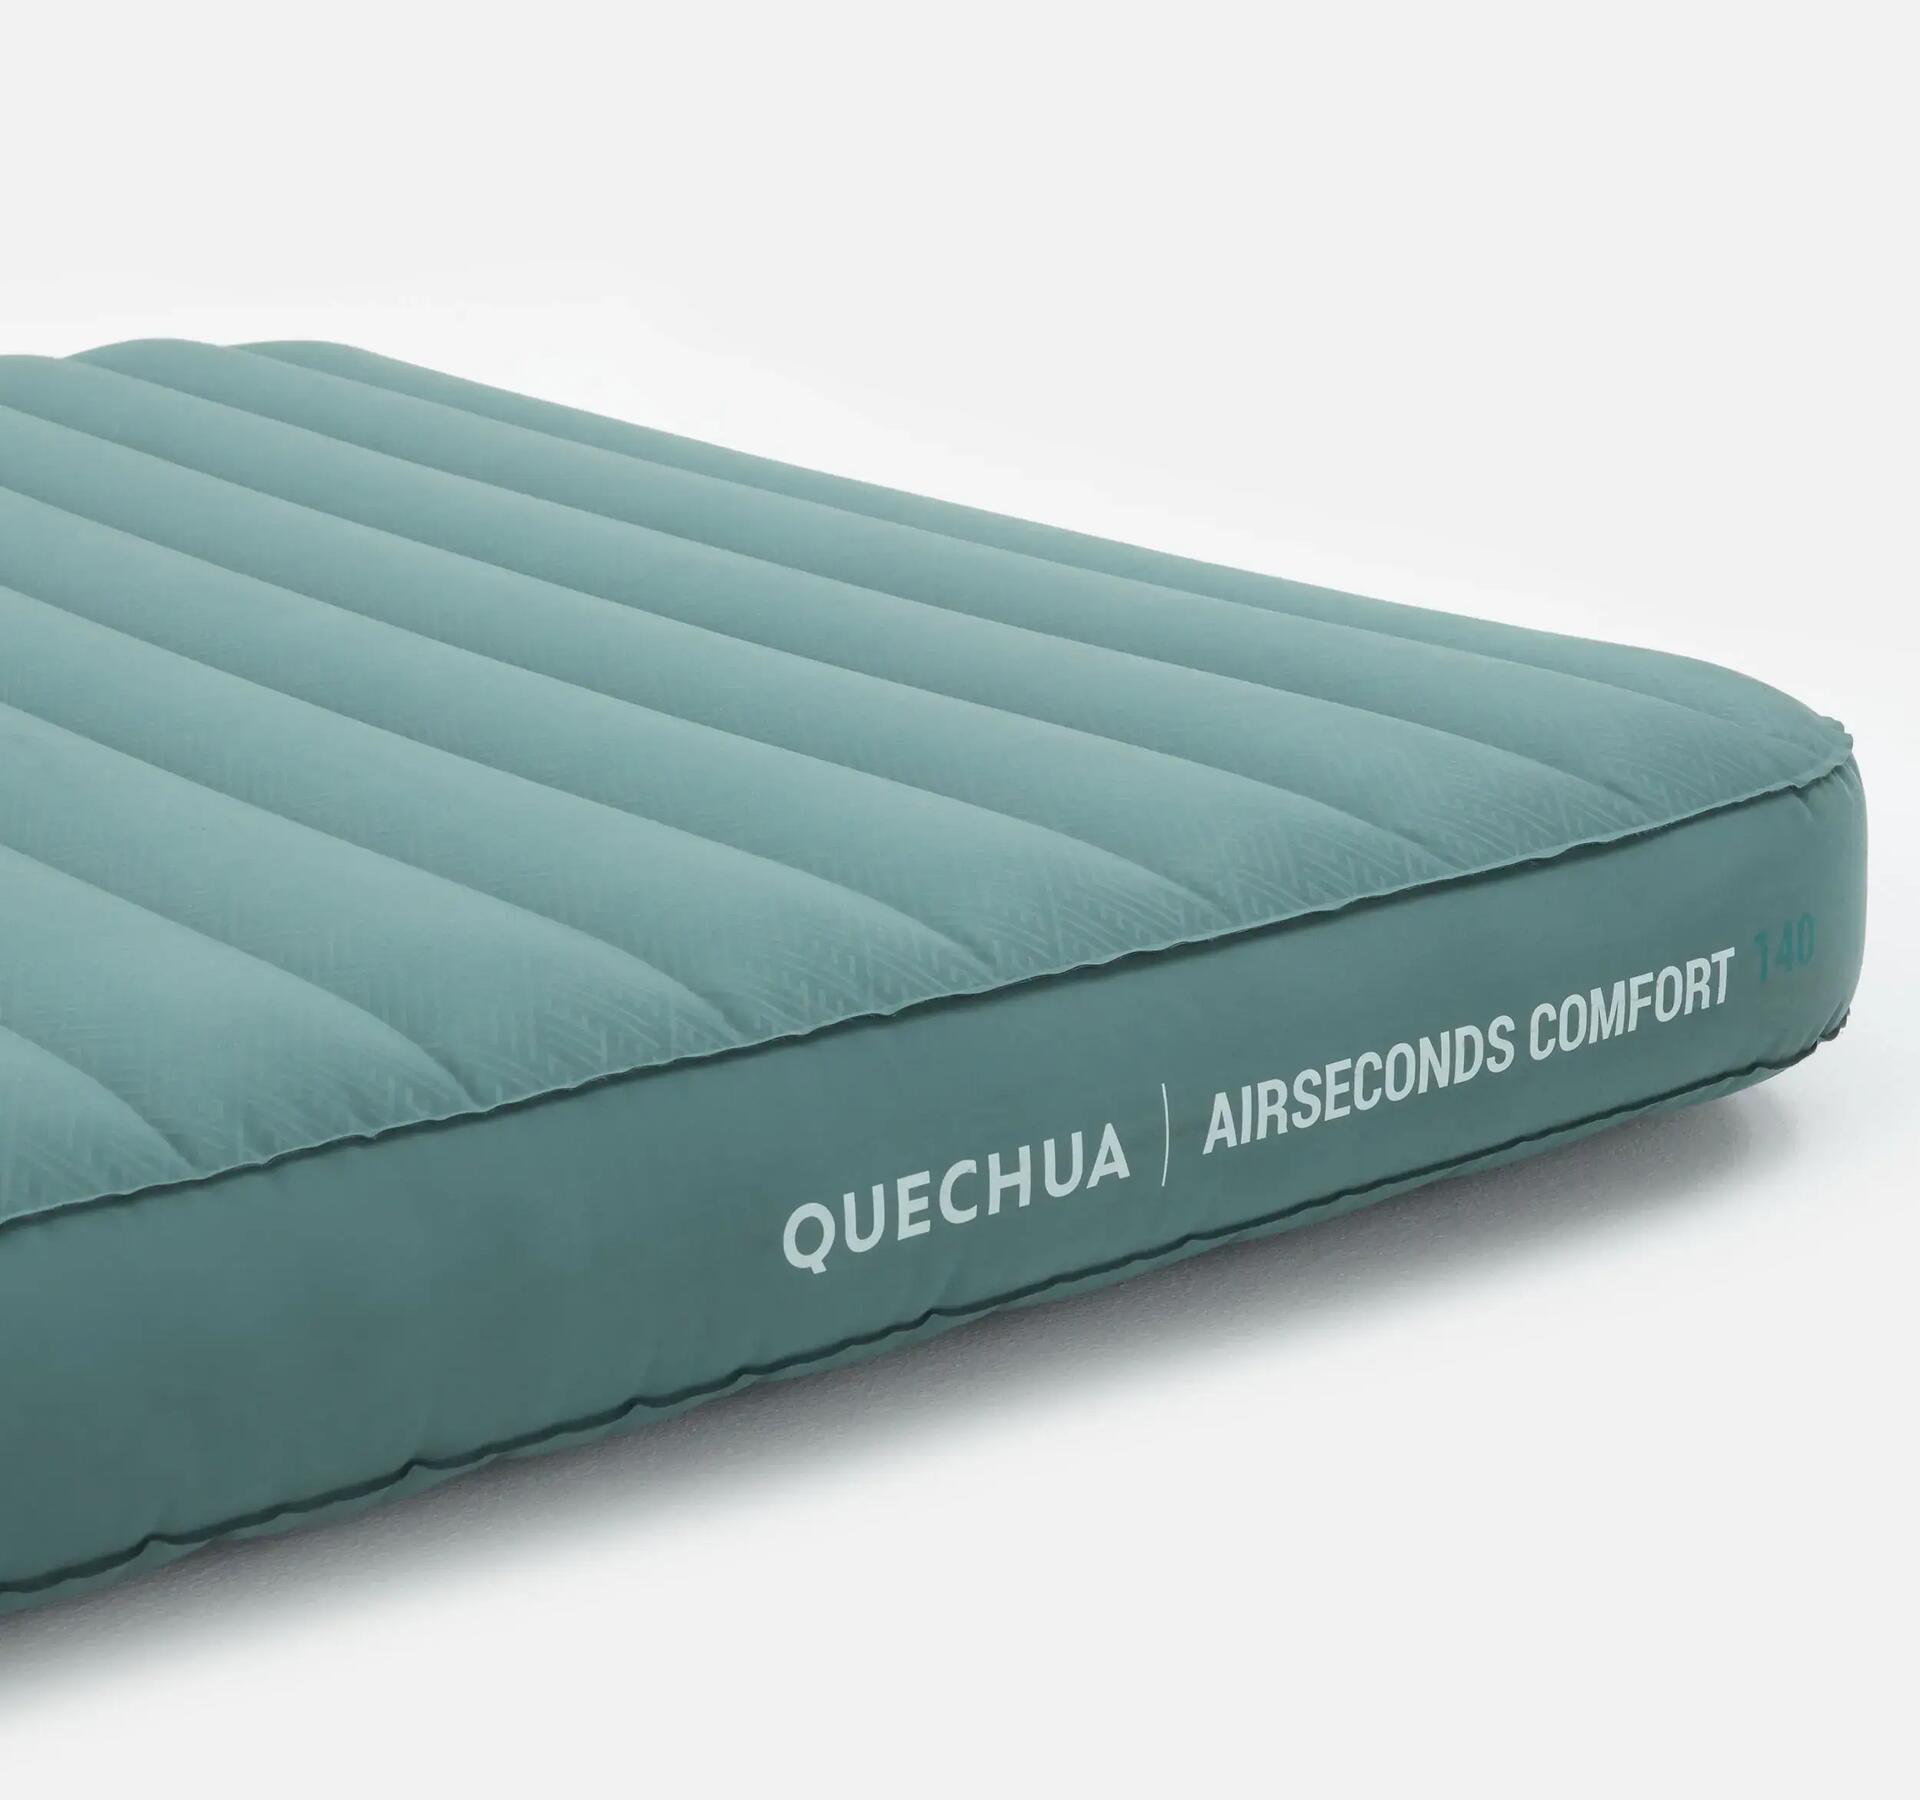 Quechua self-inflating sleeping mattress